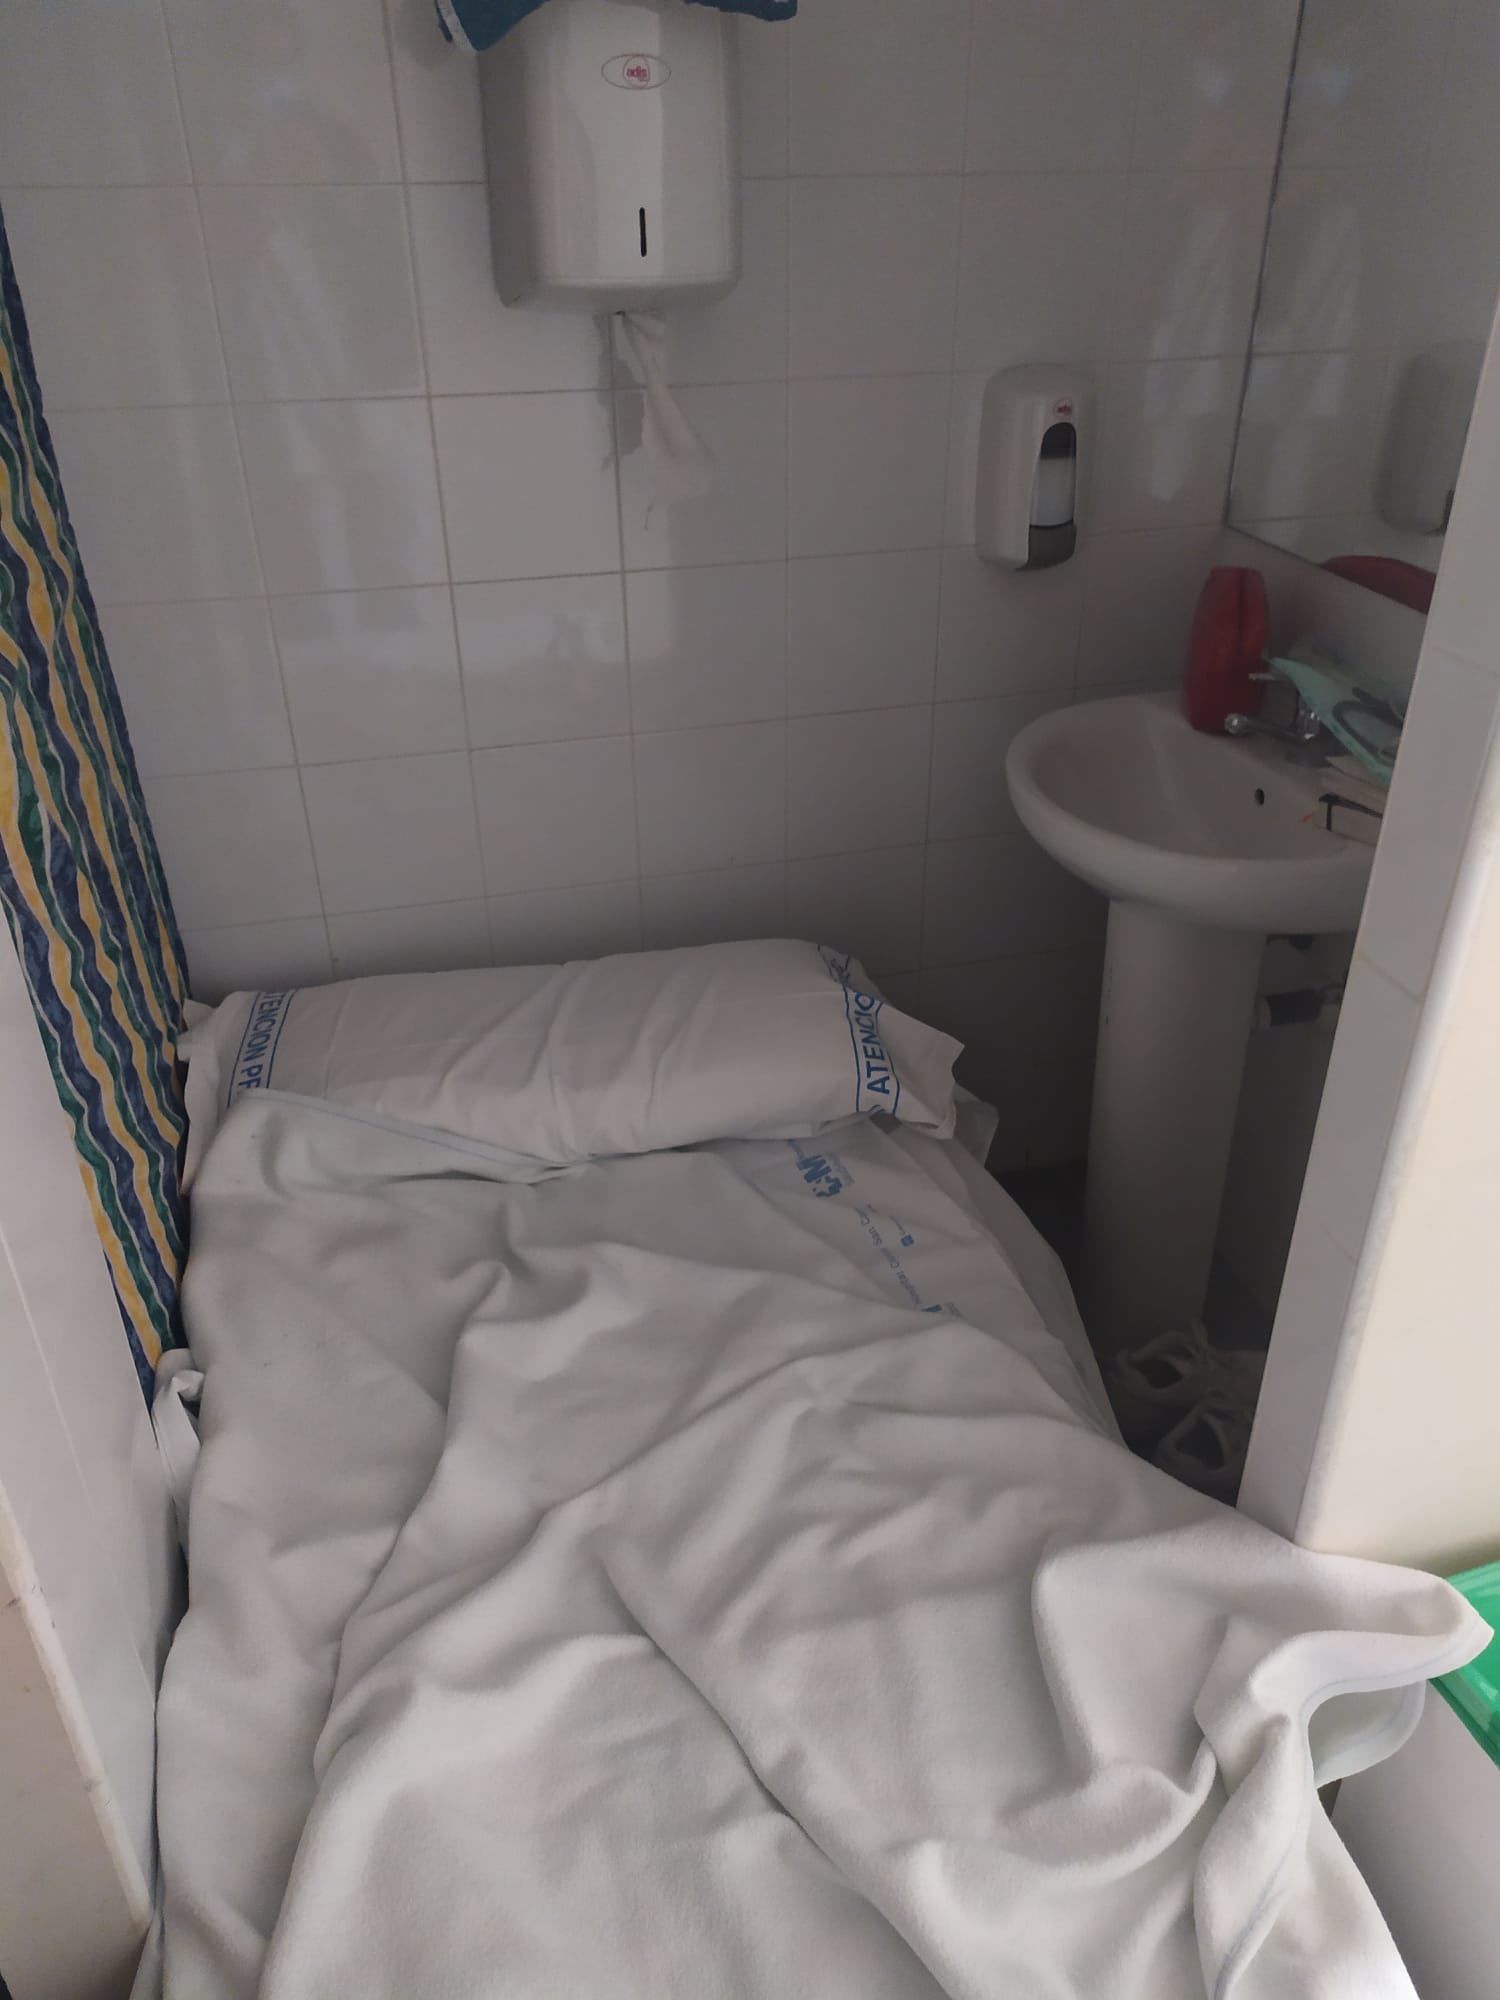 Una cama dentro de un baño, denunciado por los MIR.